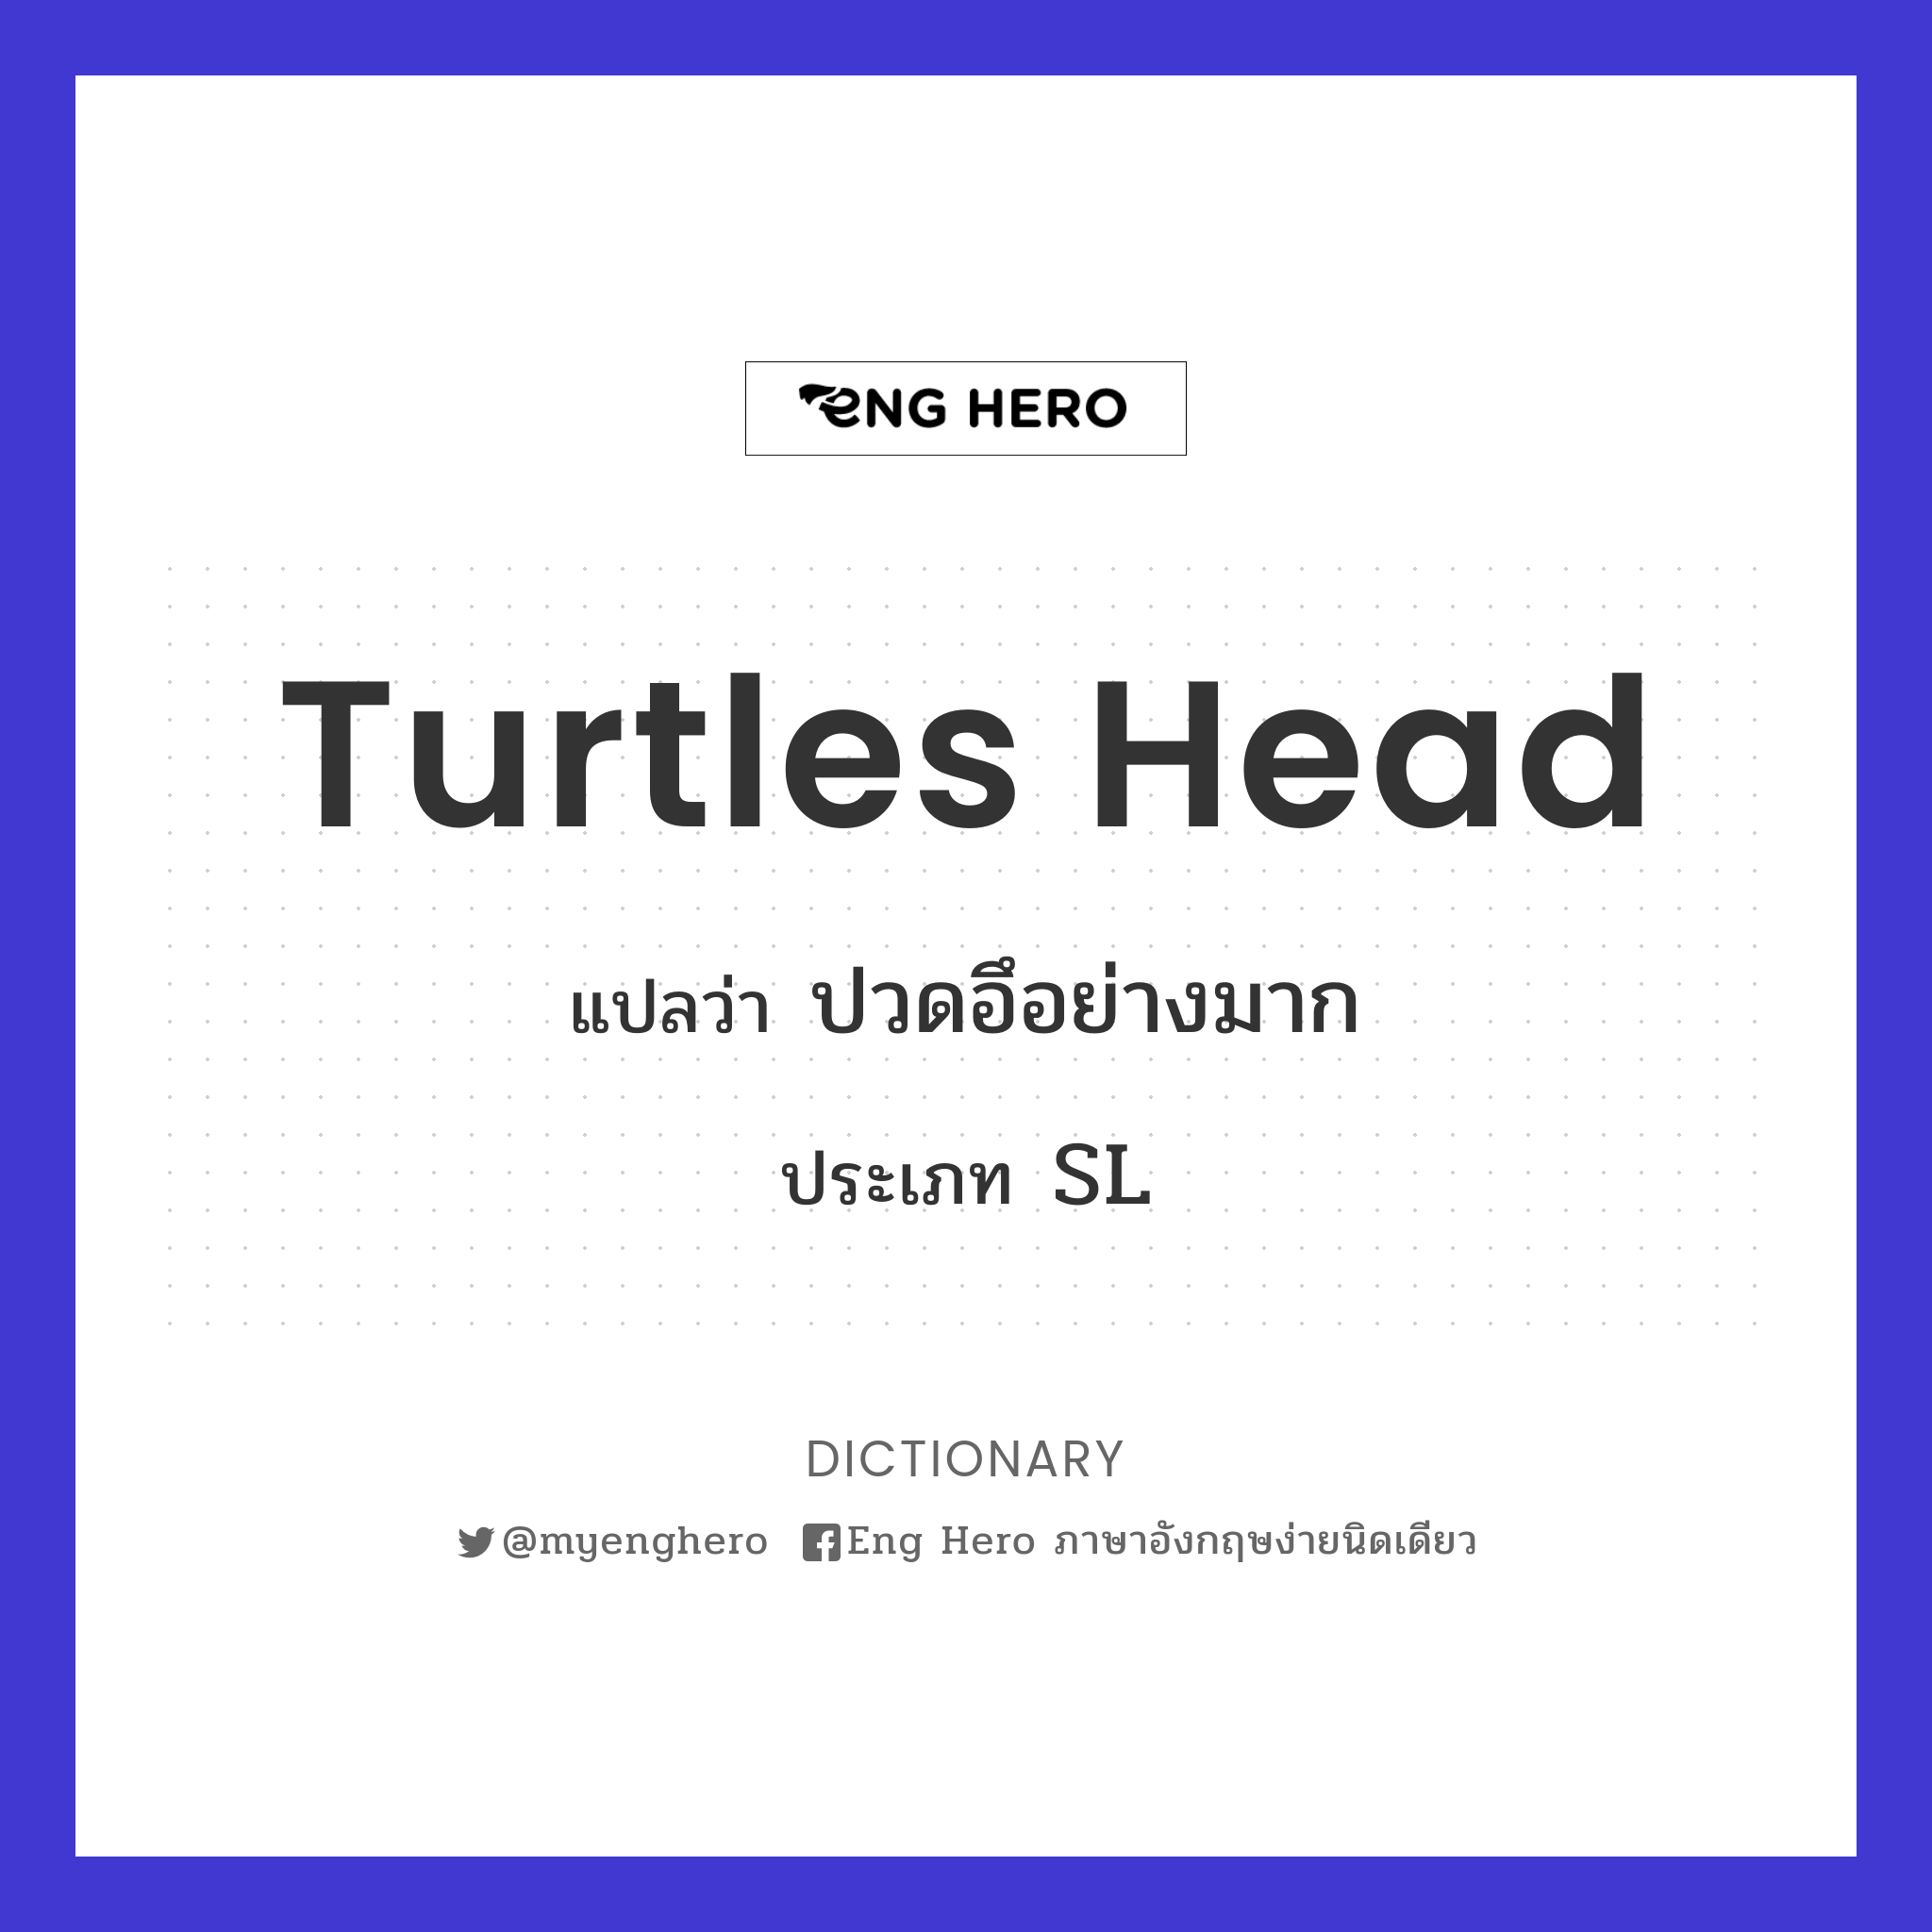 turtles head